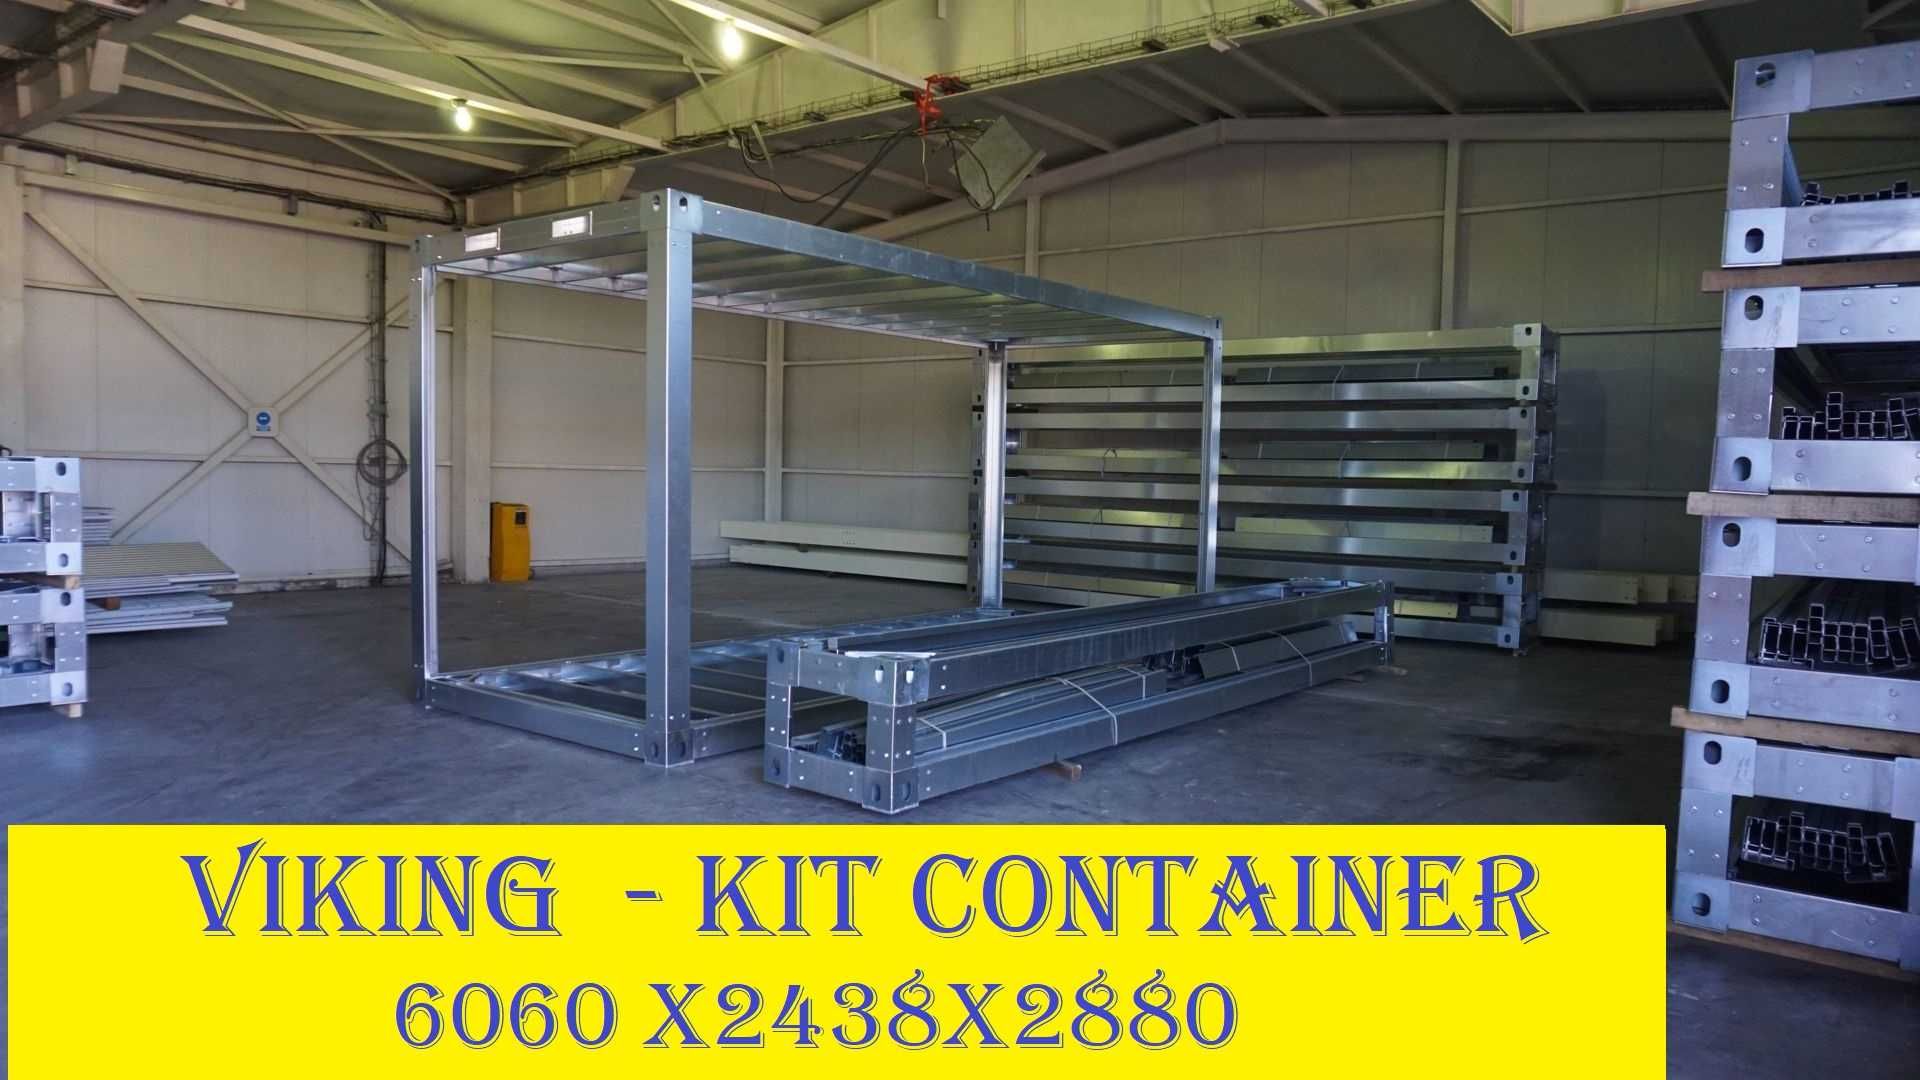 Cadru metalic 6060x2438x2880 container